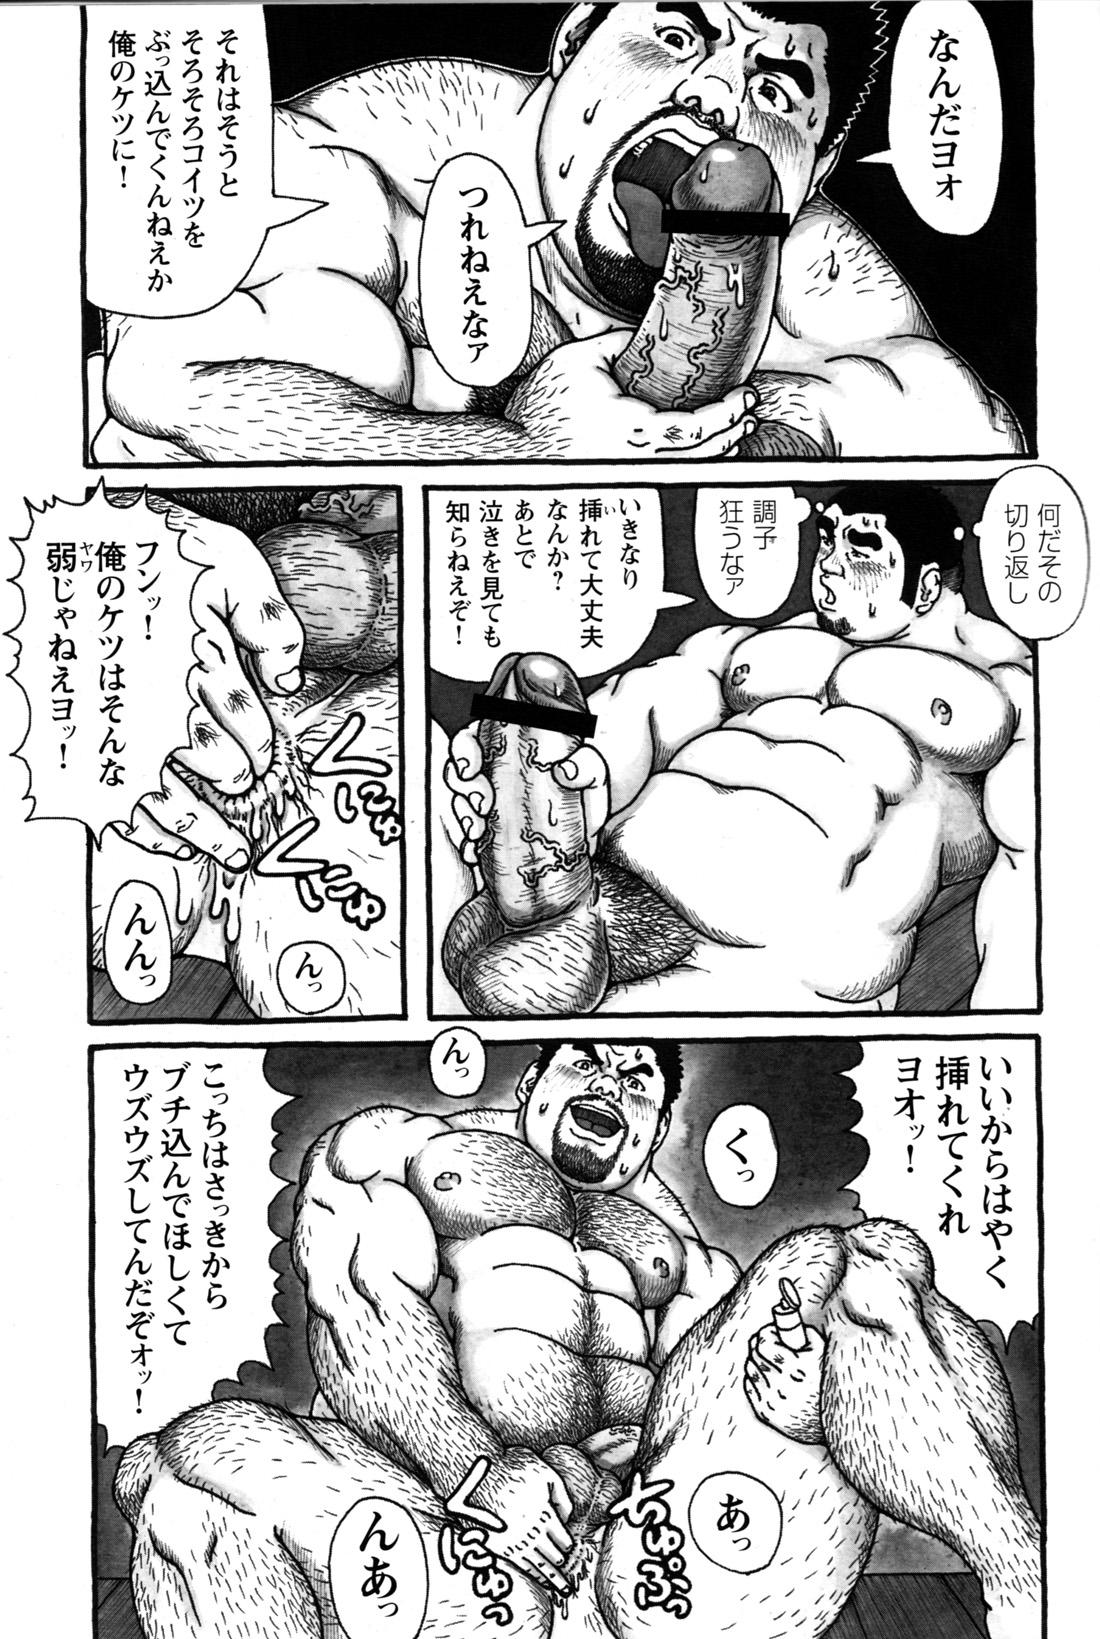 Comic G-men Gaho No.09 Gacchibi Zeme 157